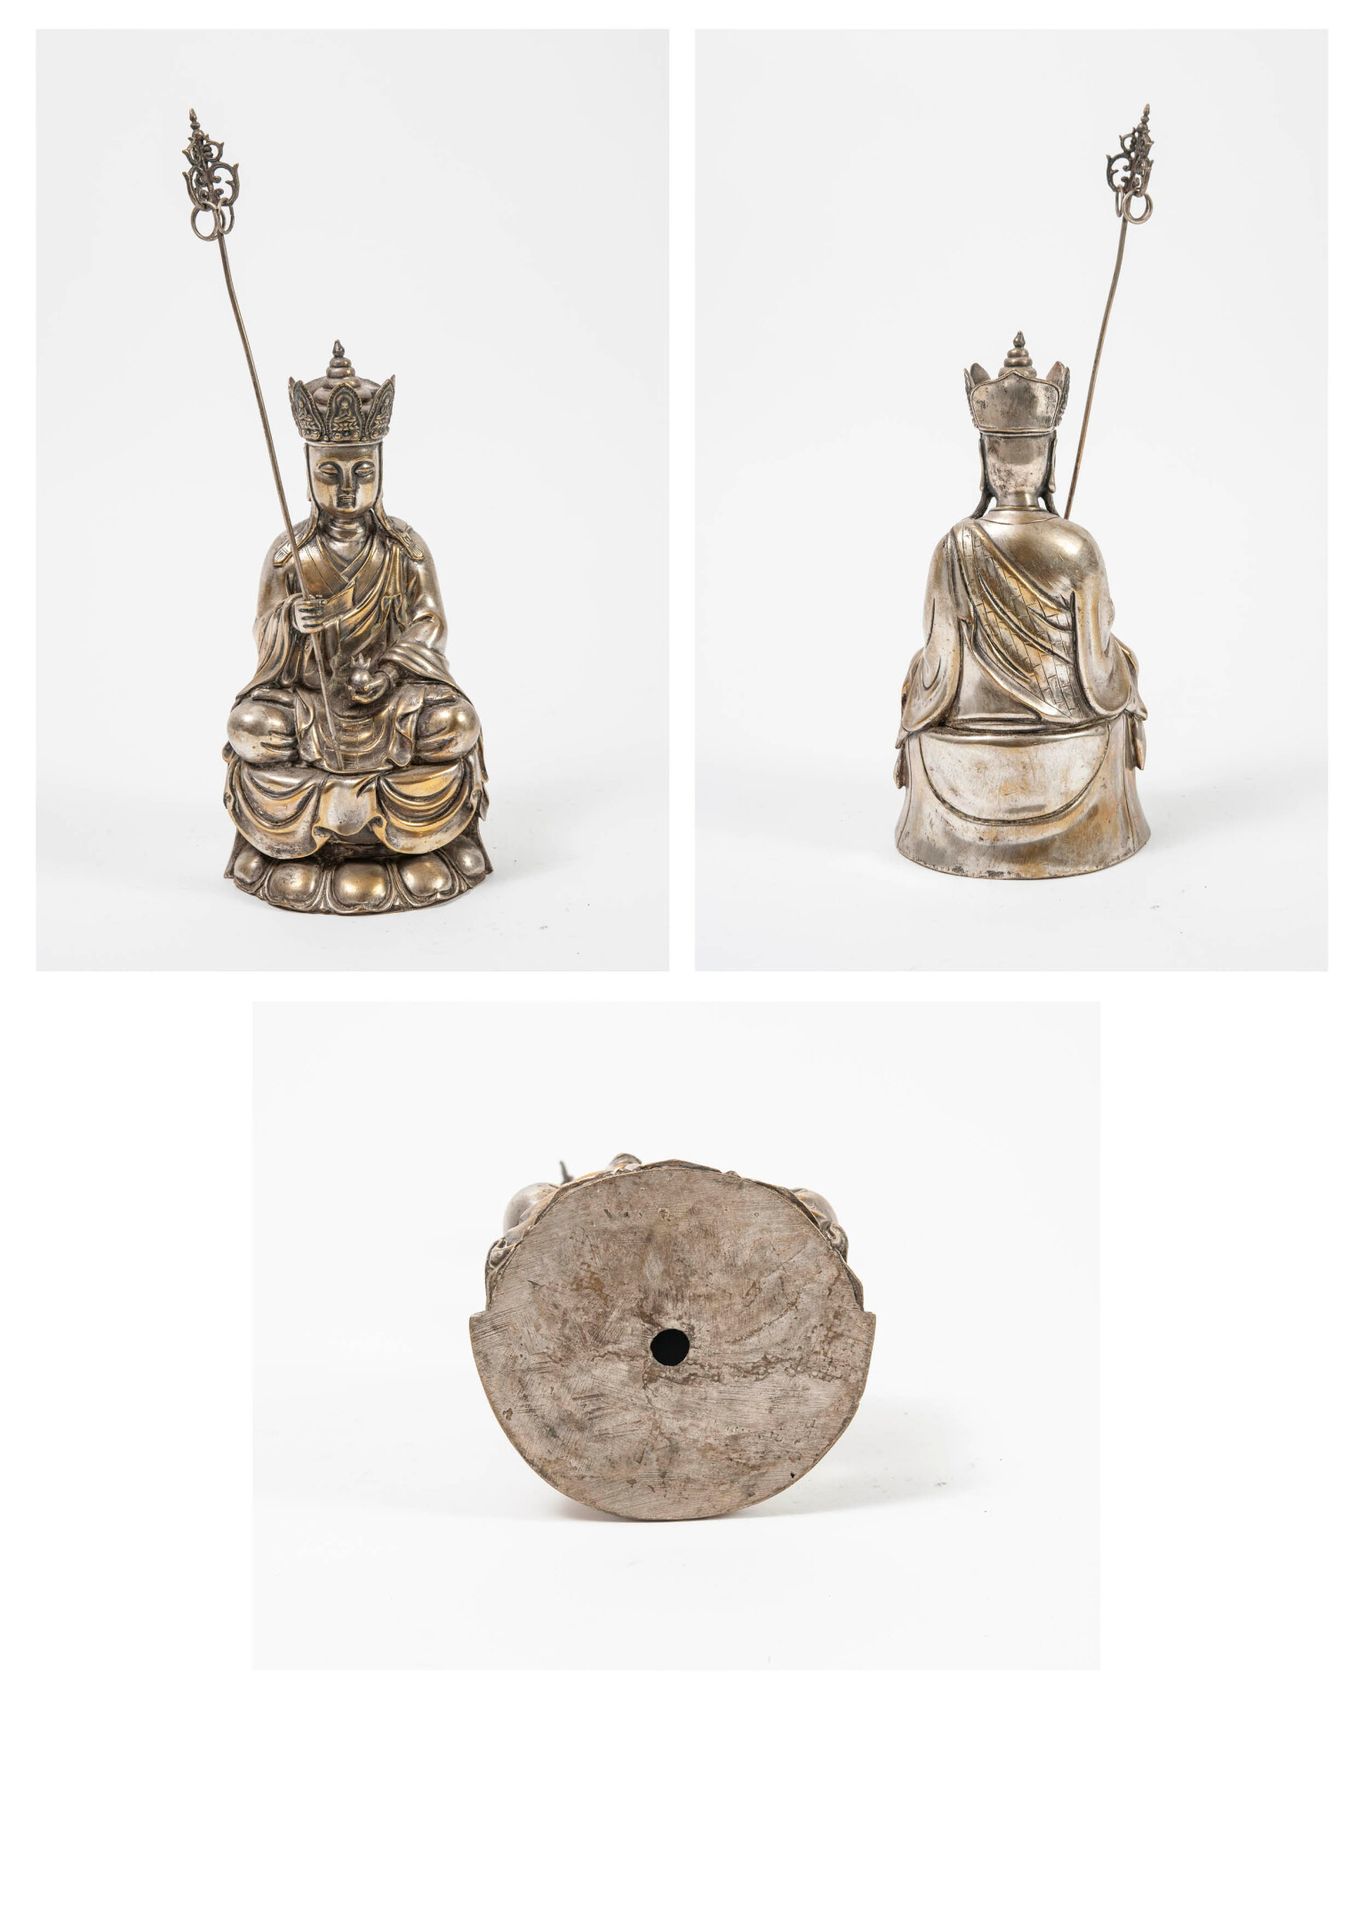 CHINE, début du XXème siècle 坐在莲花底座上的帕达玛萨那佛，手持棍子。

该主题是由脱脂黄铜制成的。

H.31厘米。

磨损、划痕&hellip;